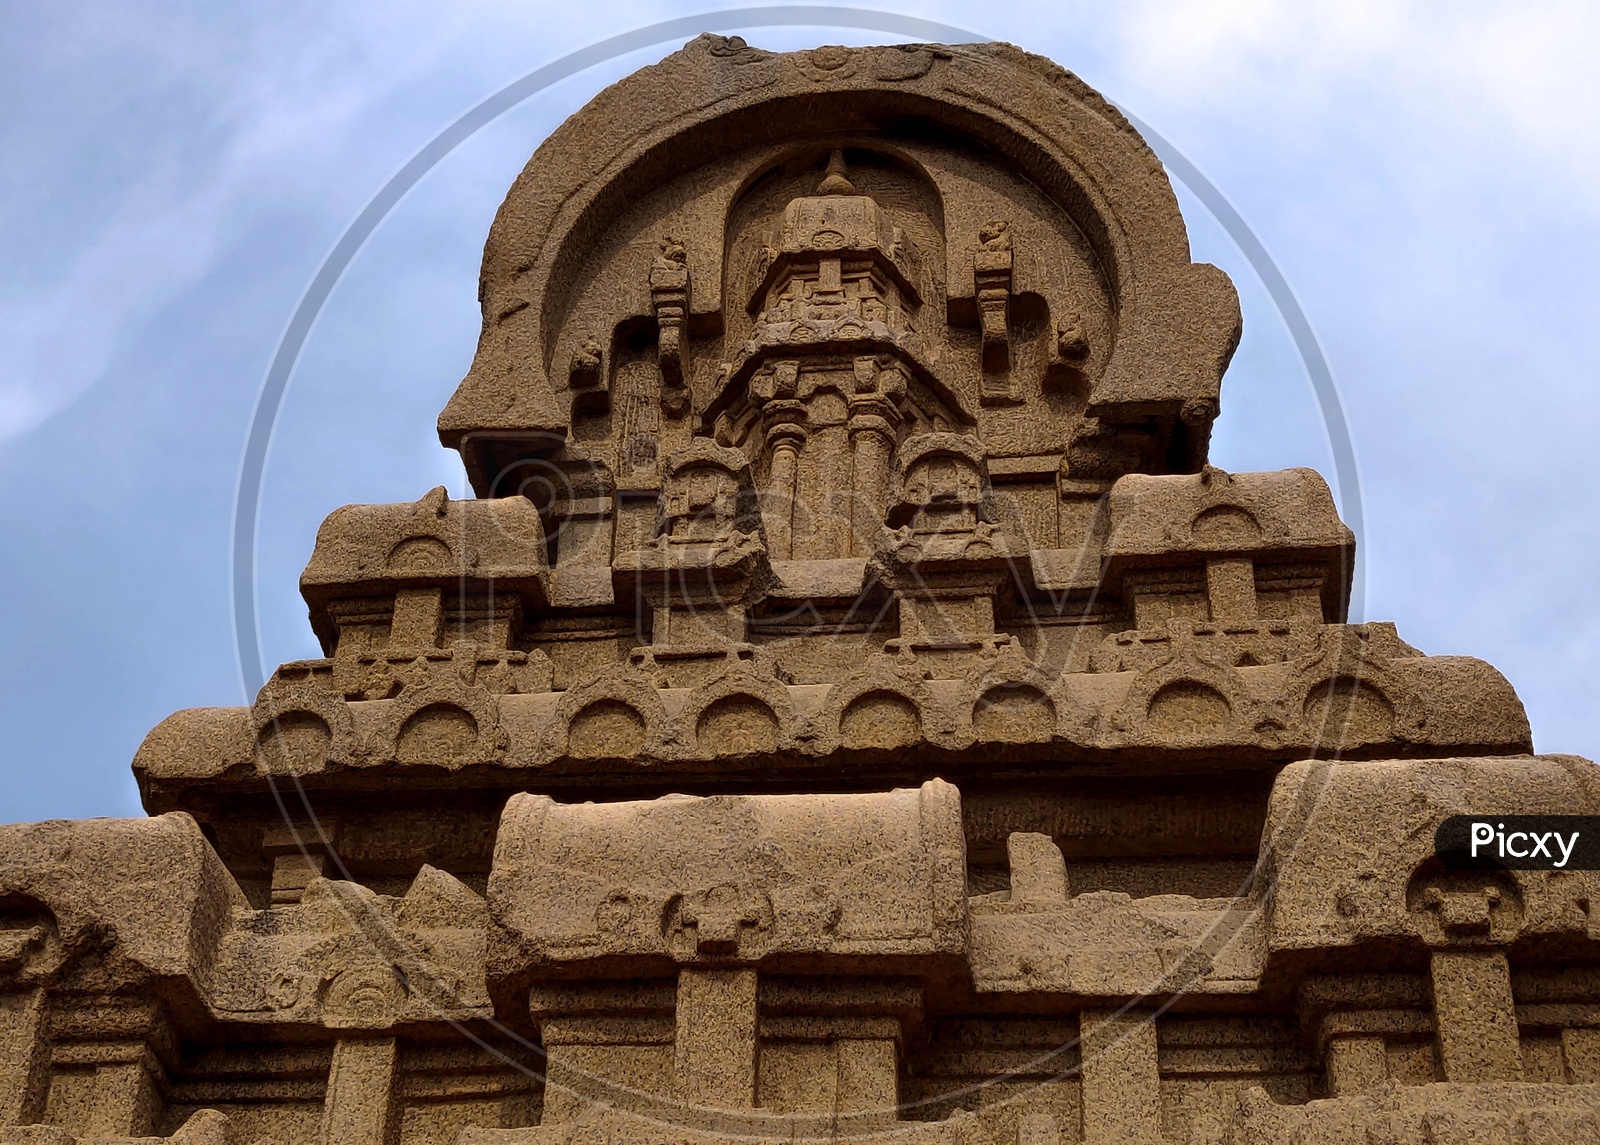 Architecture of Mahabalipuram